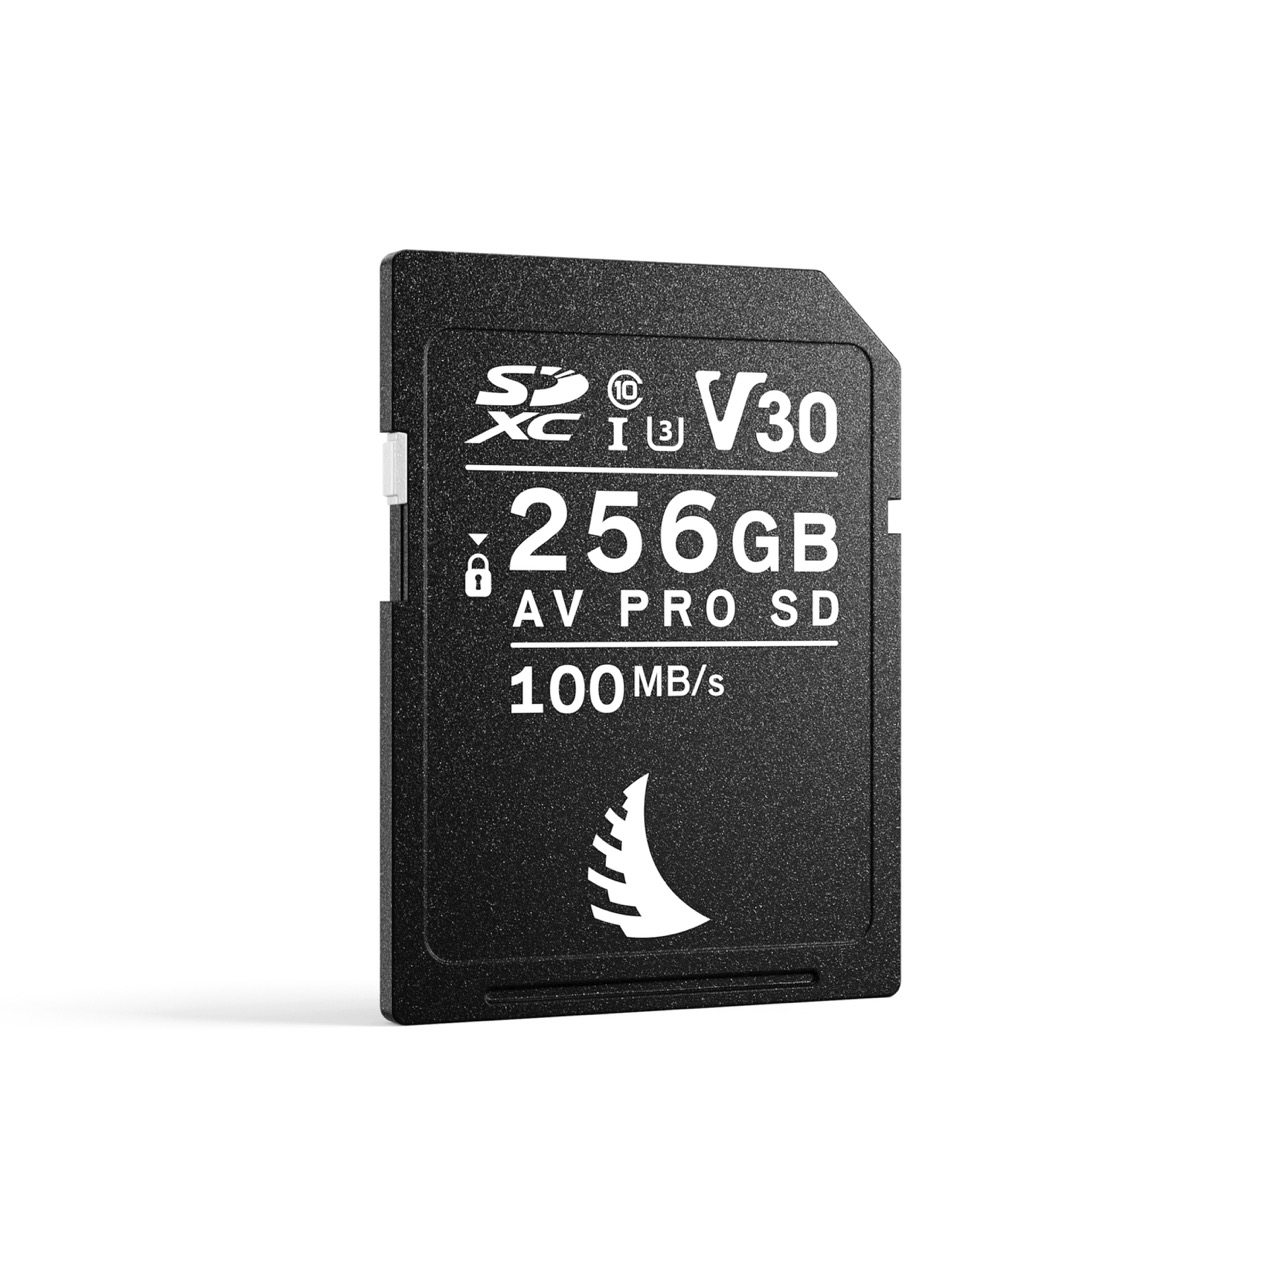 Angelbird AV PRO SD V30 256GB Speicherkarte, Frontalansicht leicht schräg